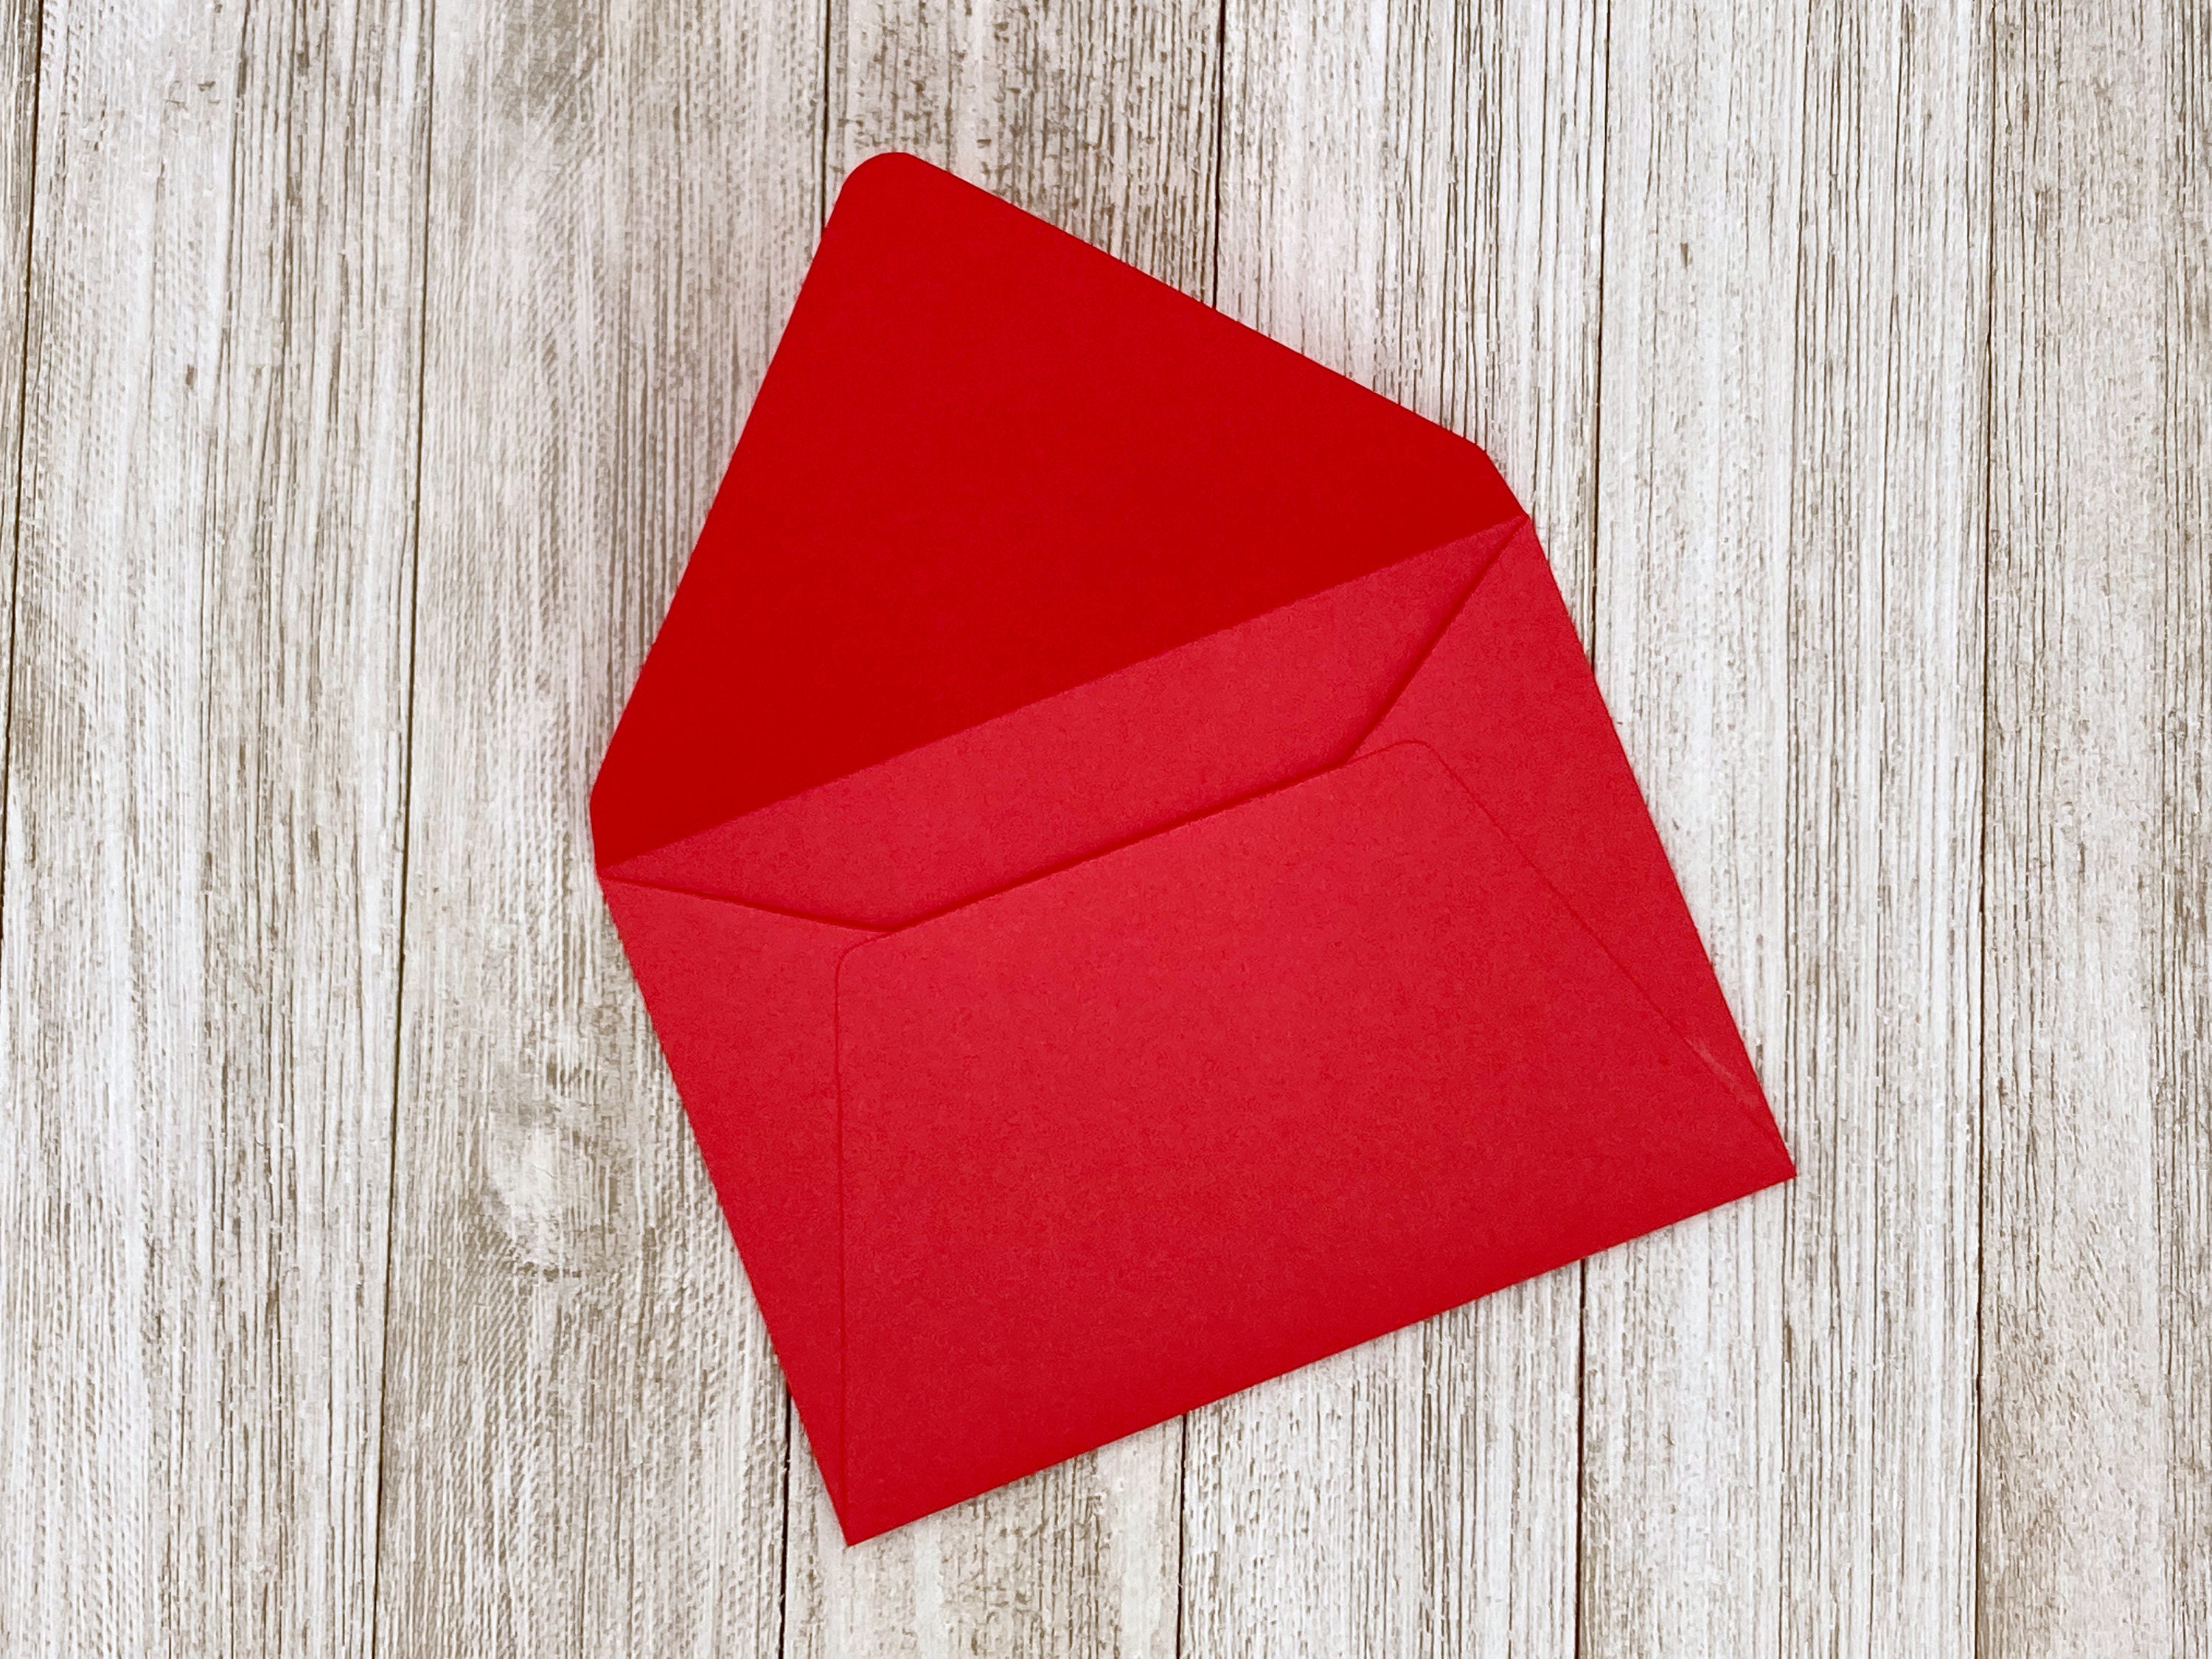 transparent red envelope